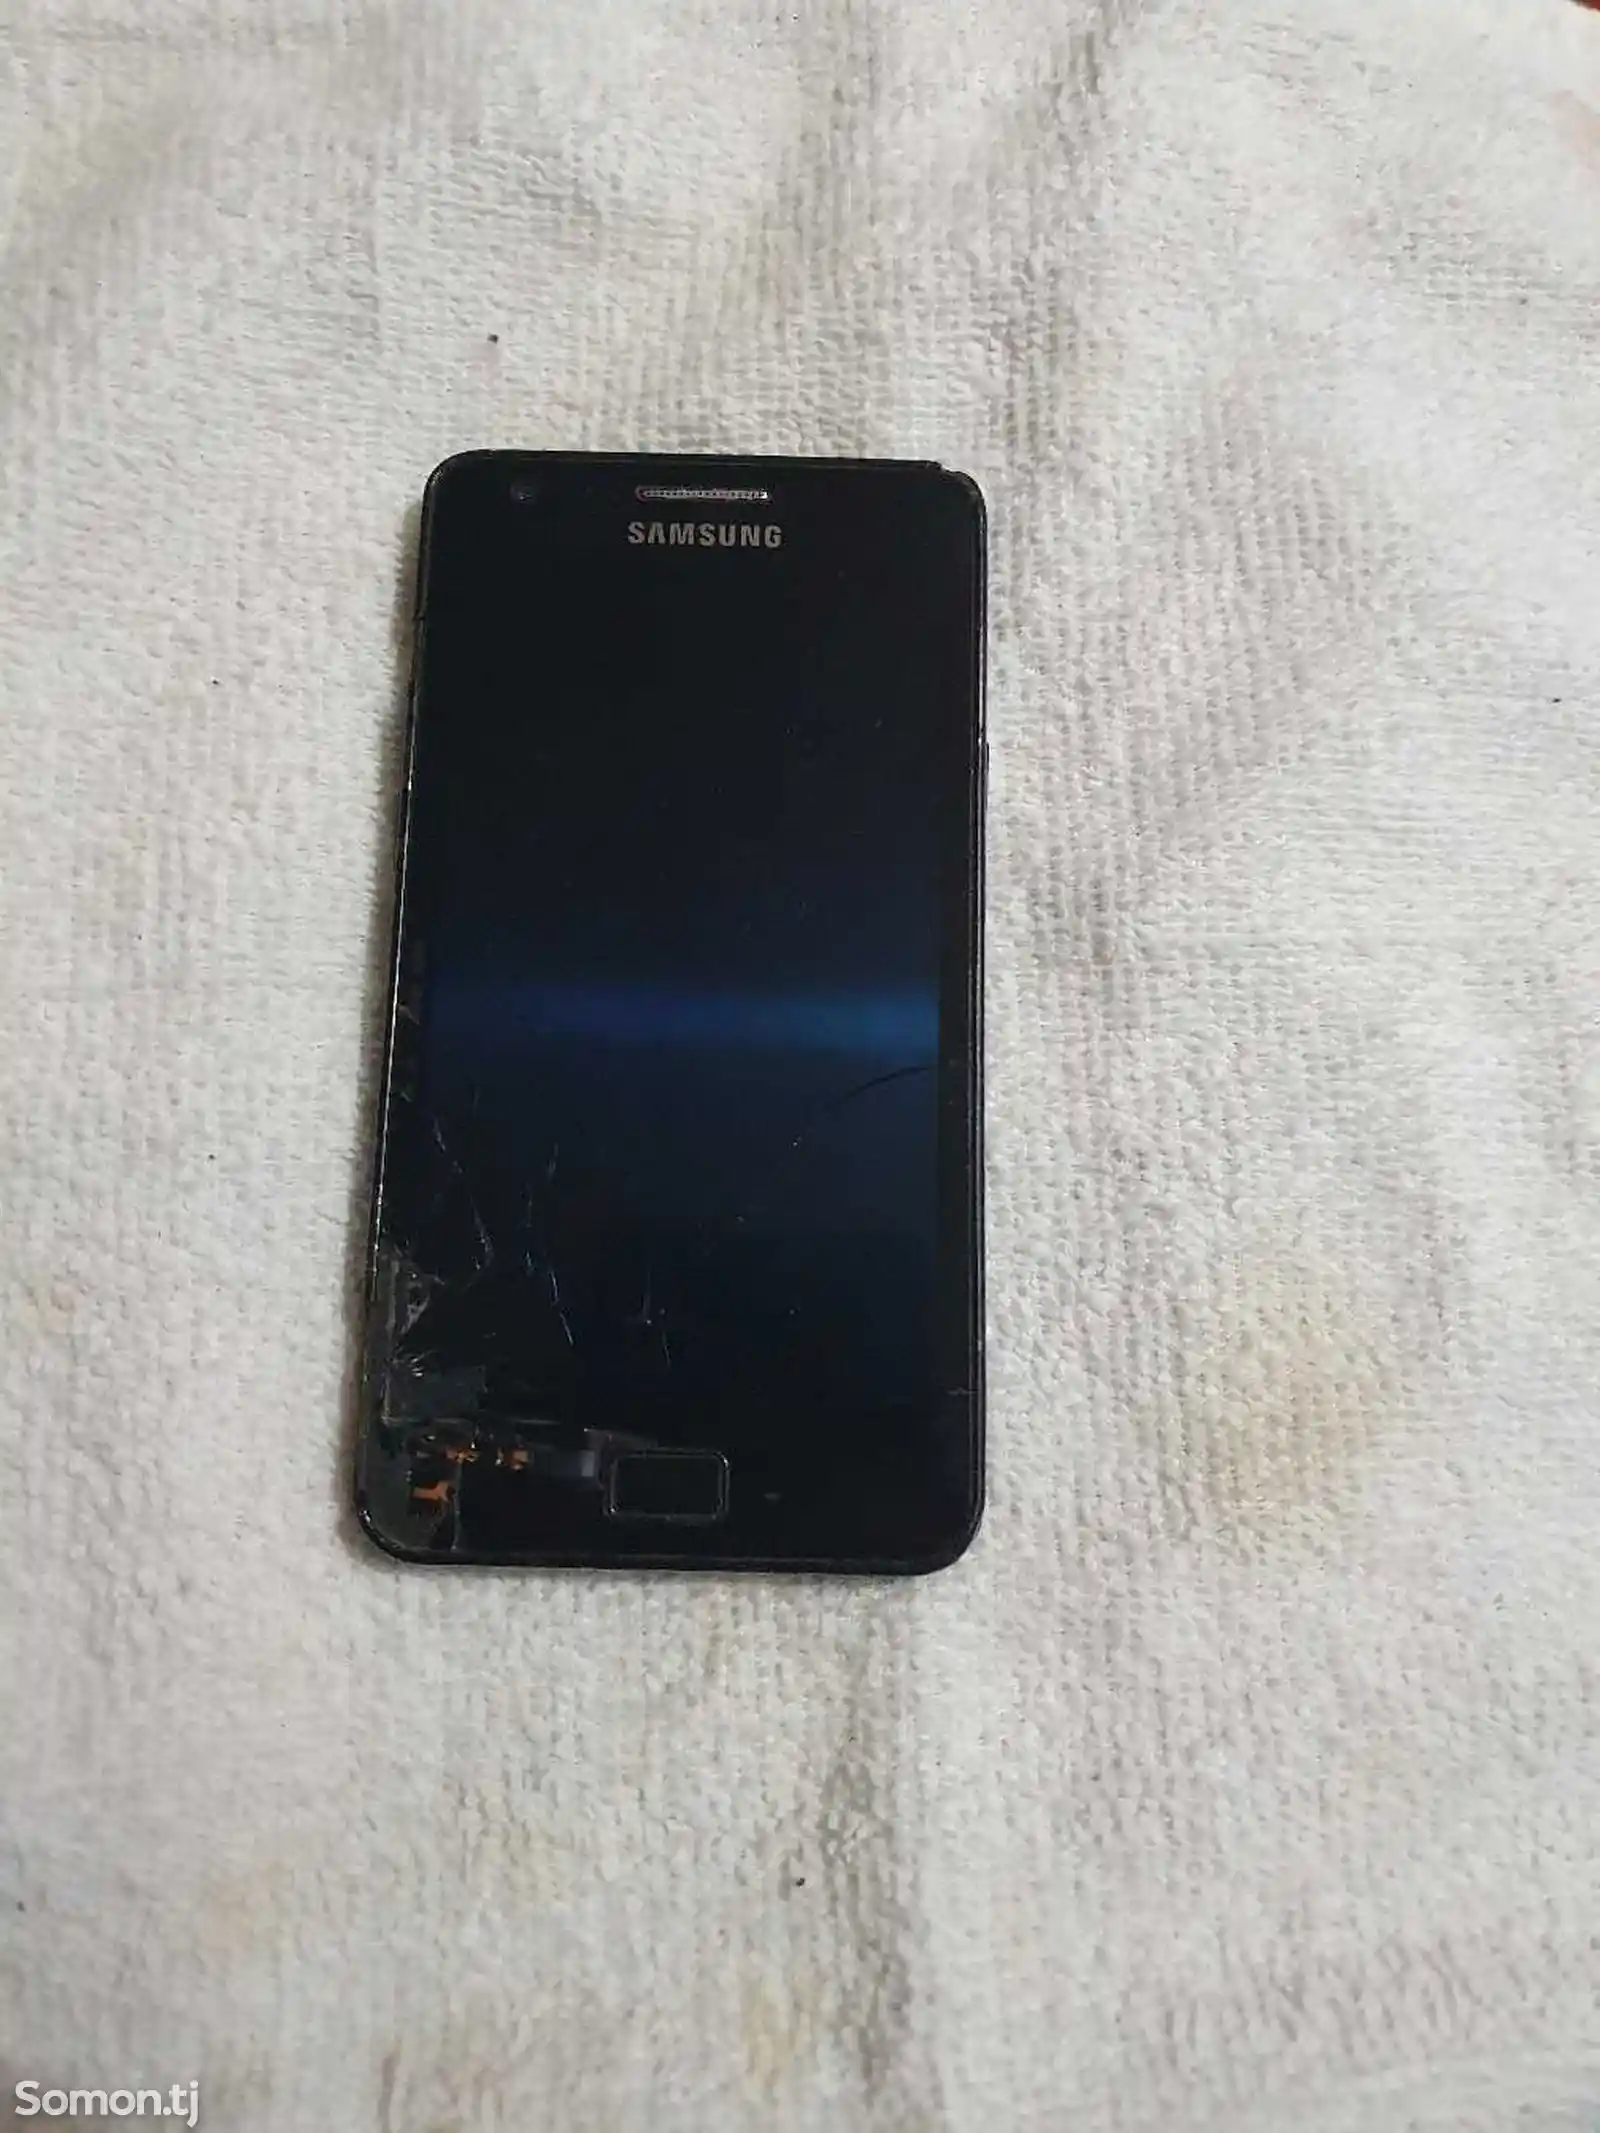 Samsung Galaxy S2-2